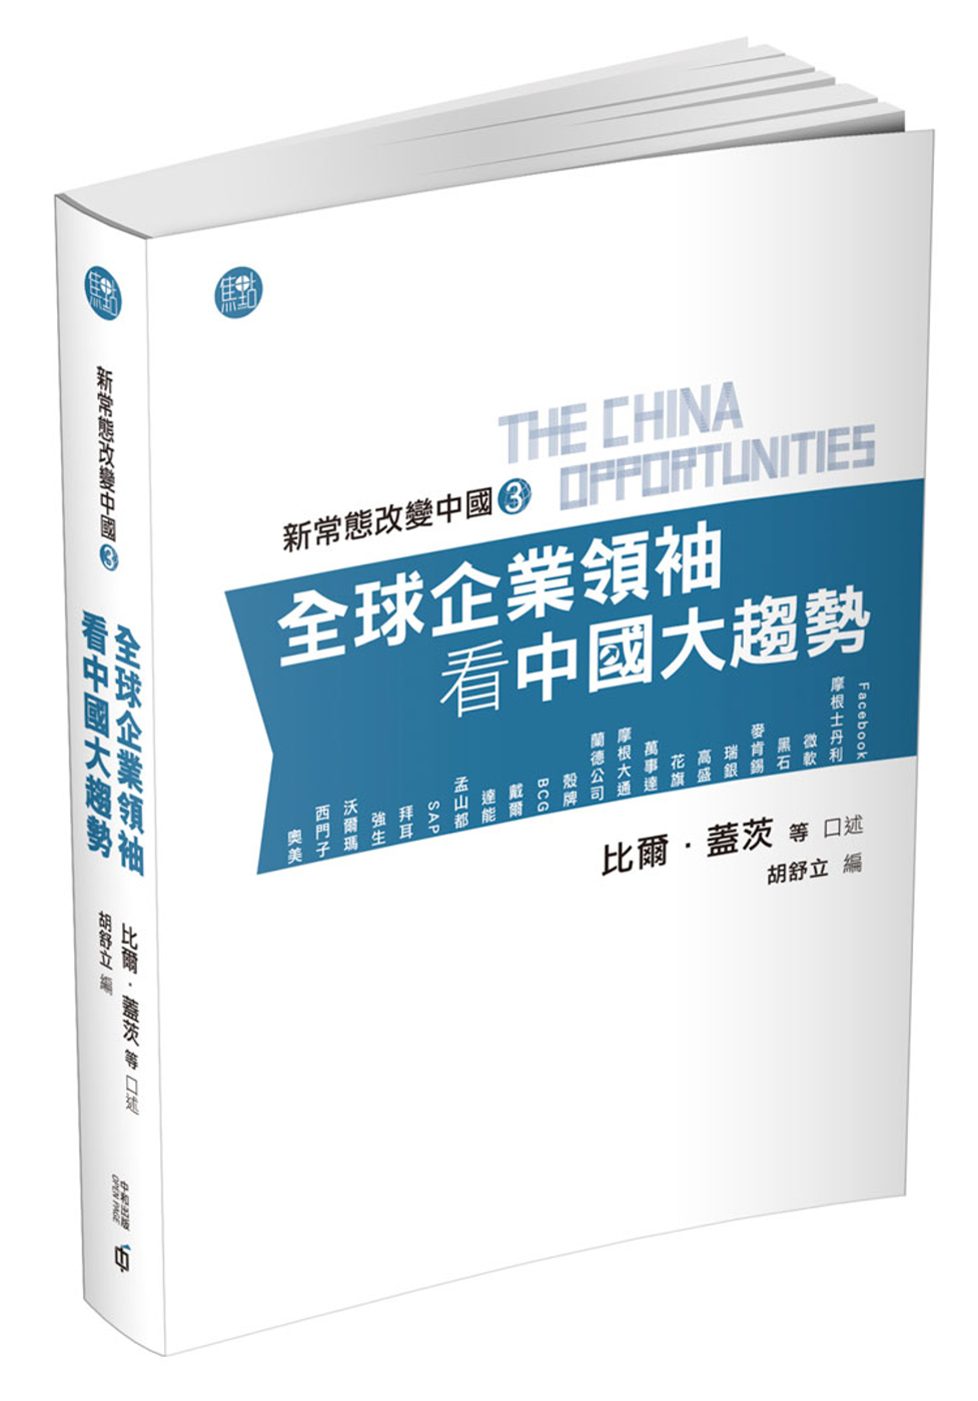 新常態改變中國3：全球企業領袖看中國大趨勢